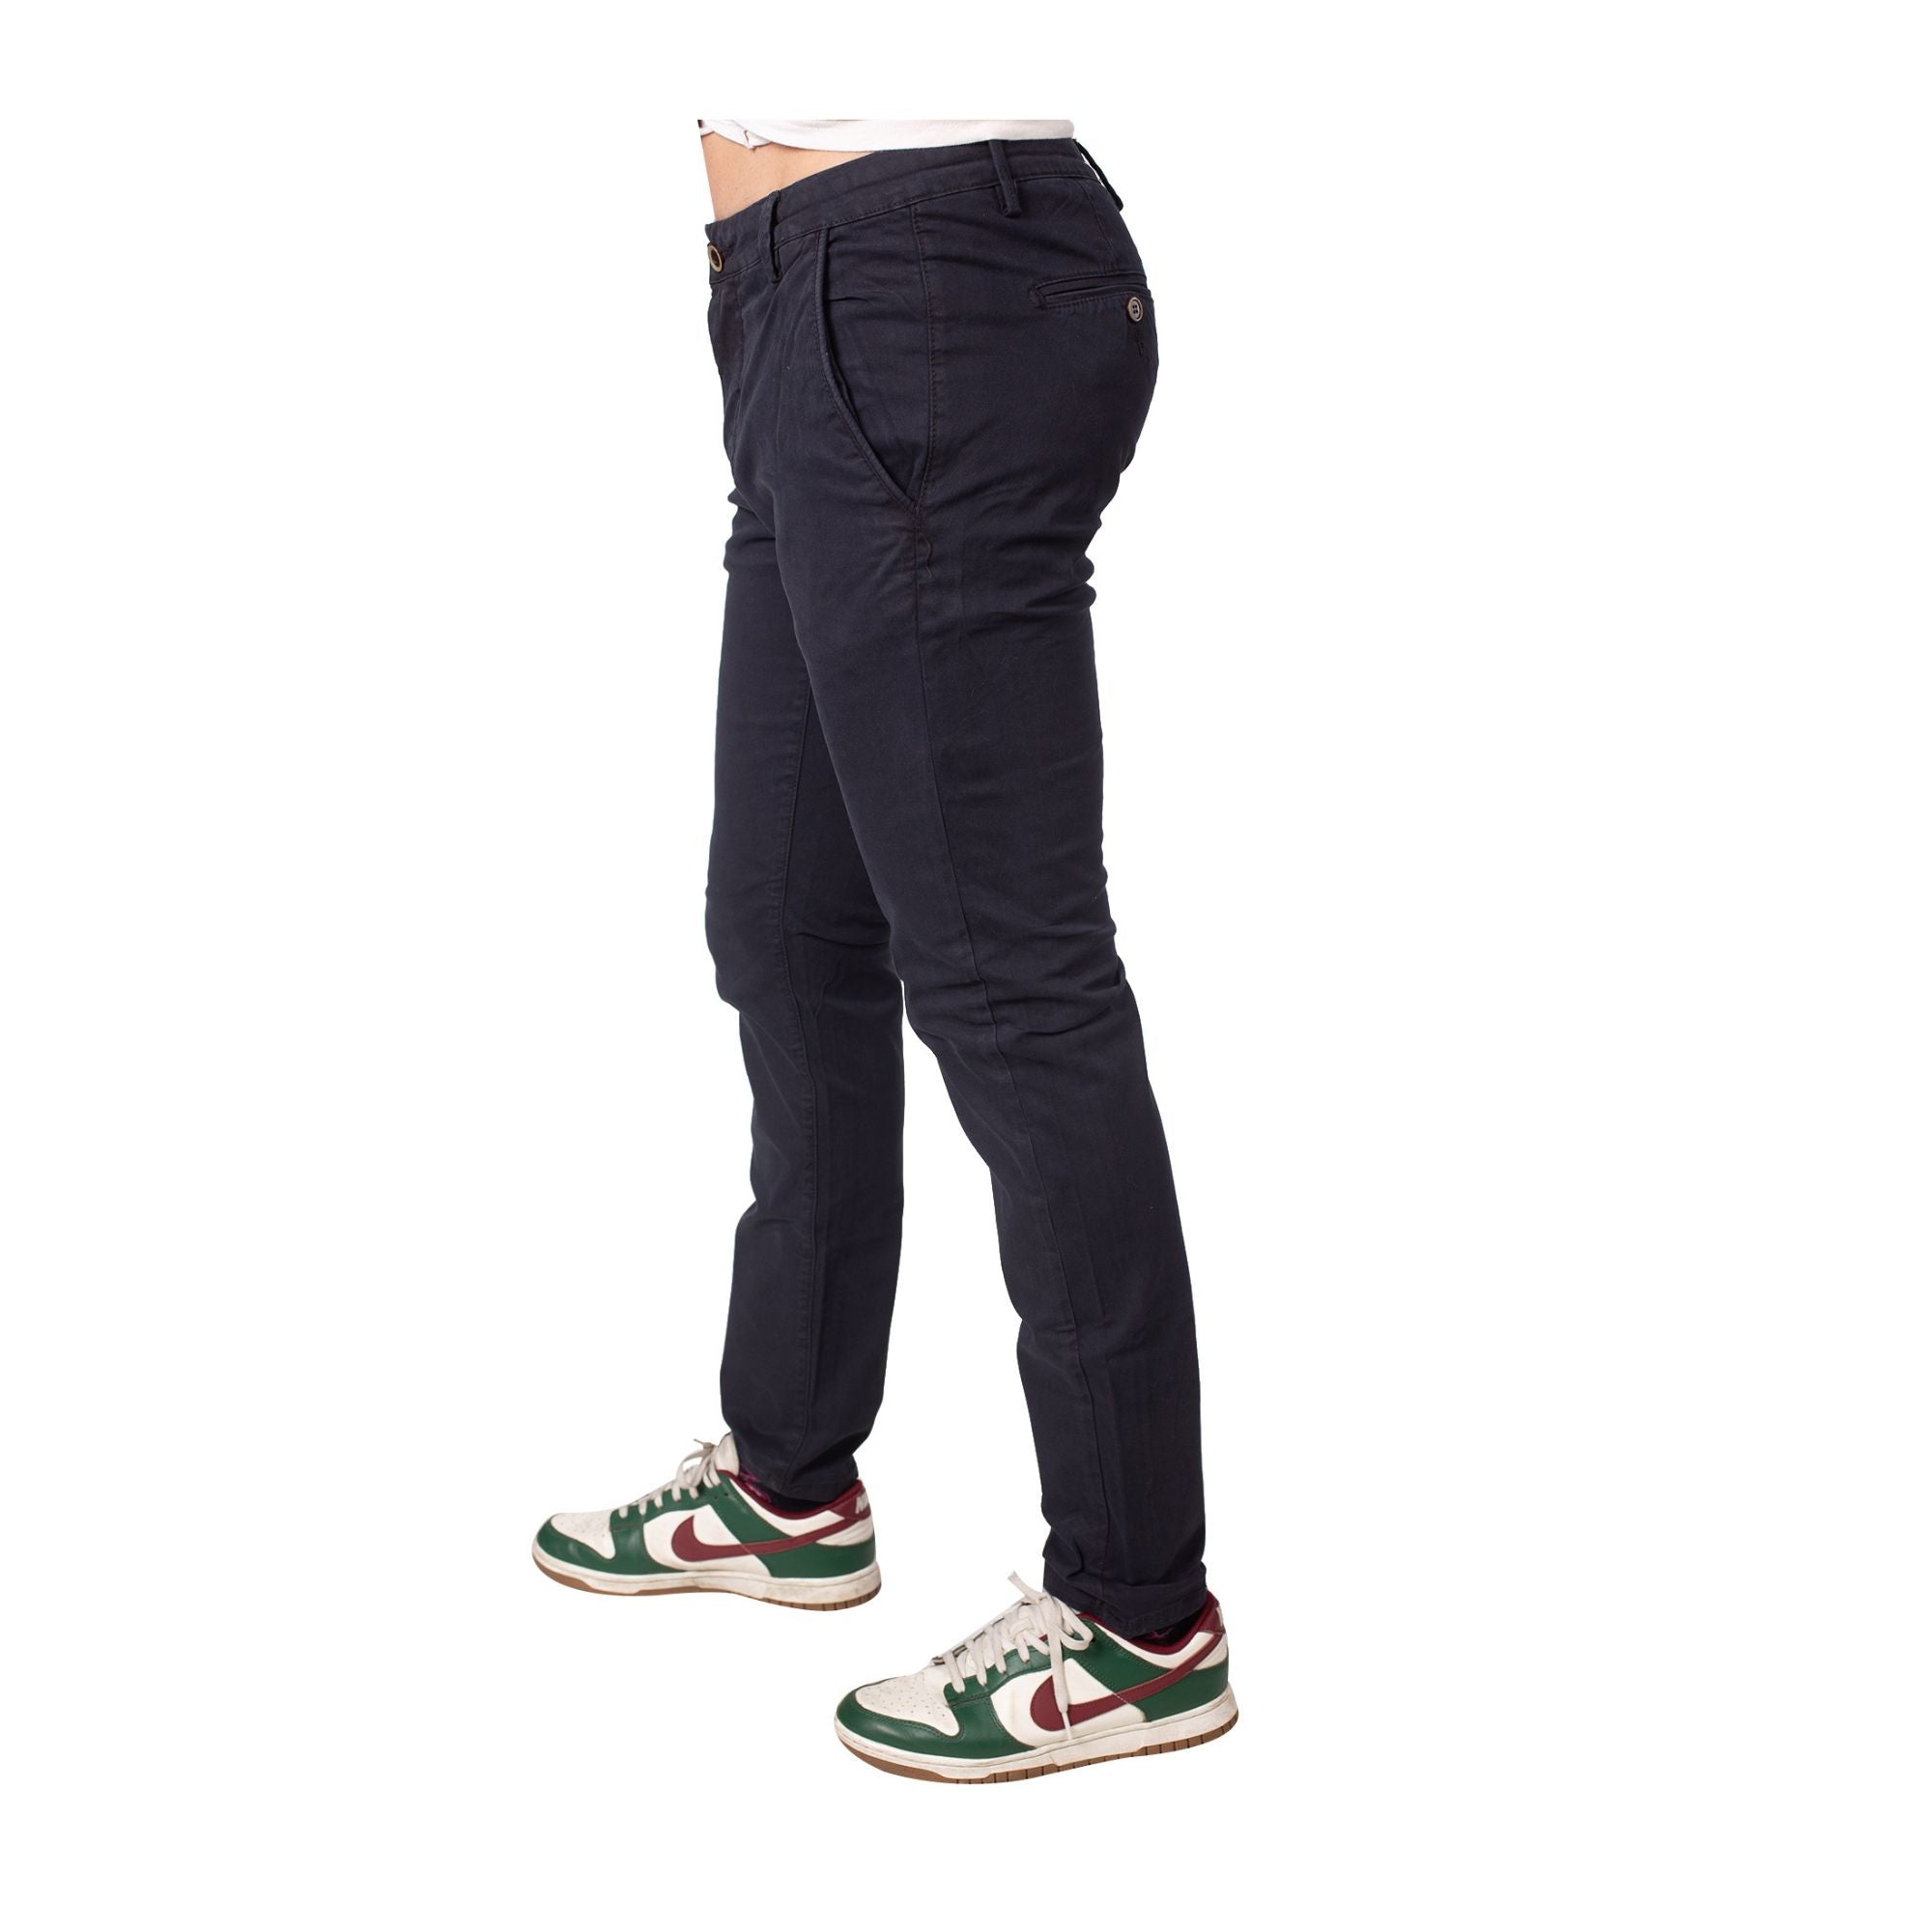 Pantalone Uomo in cotone stretch con tasche laterali a filo